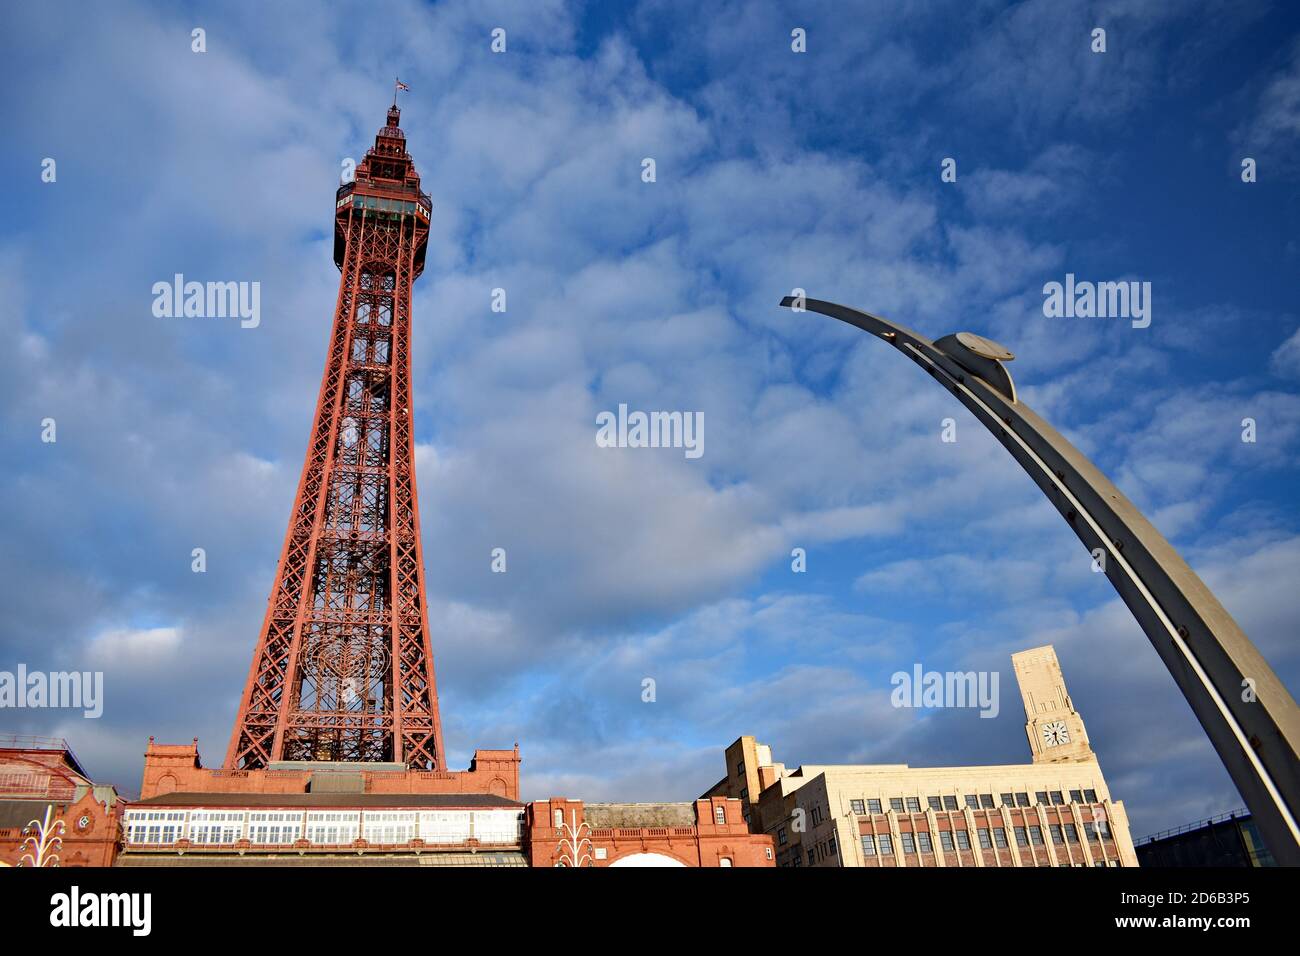 Mirando hacia arriba a la Torre Blackpool en Lancashire, noroeste de Inglaterra. El color rojo de la torre destaca contra el cielo azul. Foto de stock